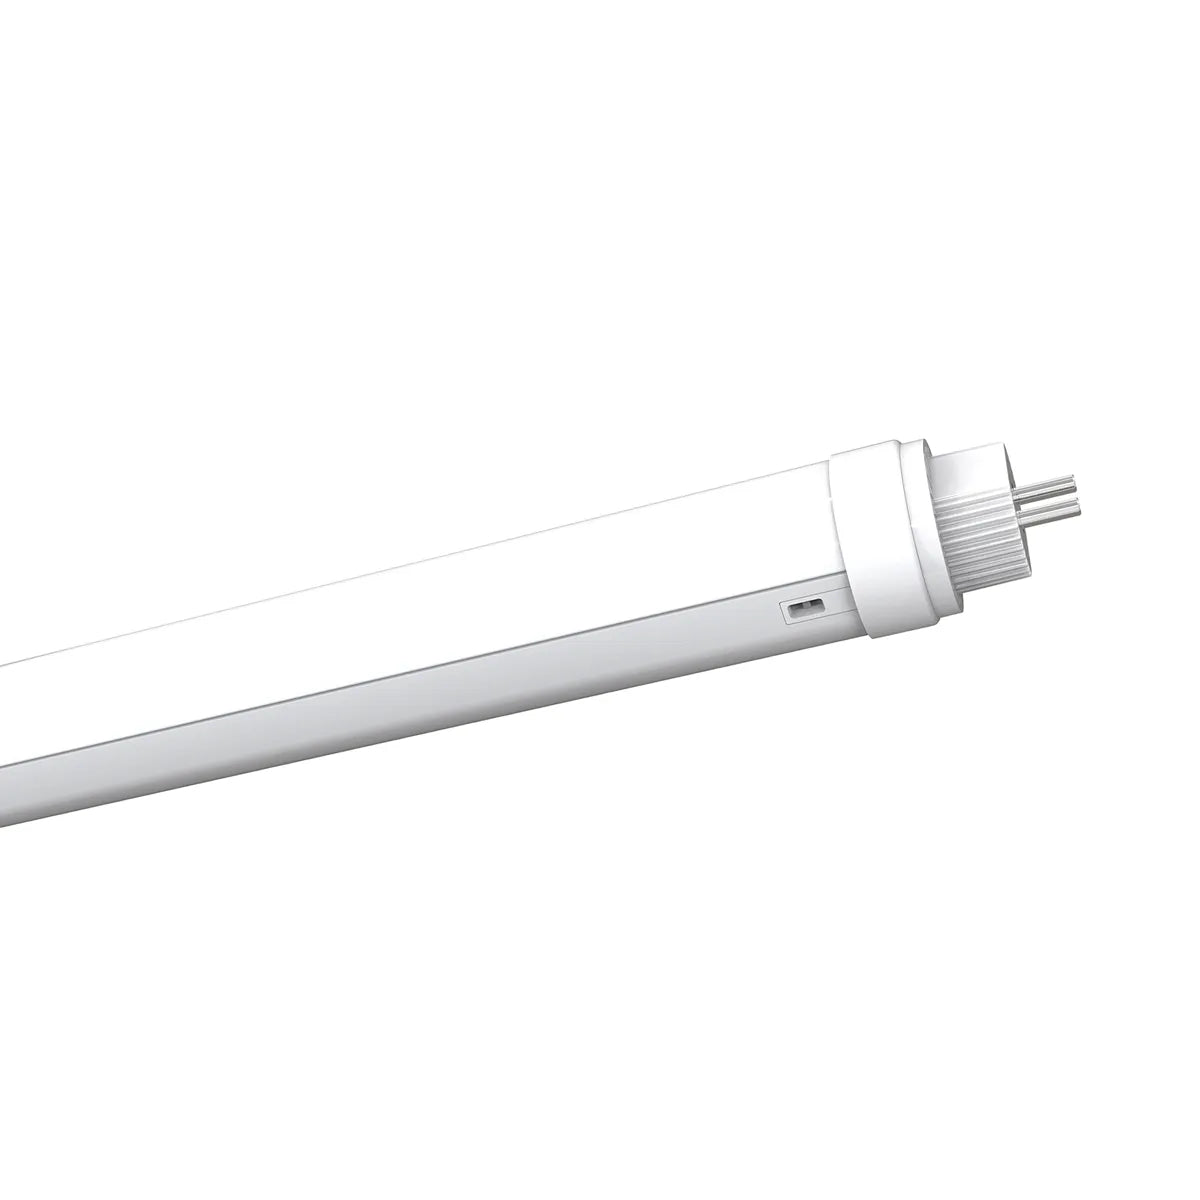 T5 LED TL-Röhre 1148 mm 18W 160lm/W drehbar - Ultrahohes Lumen